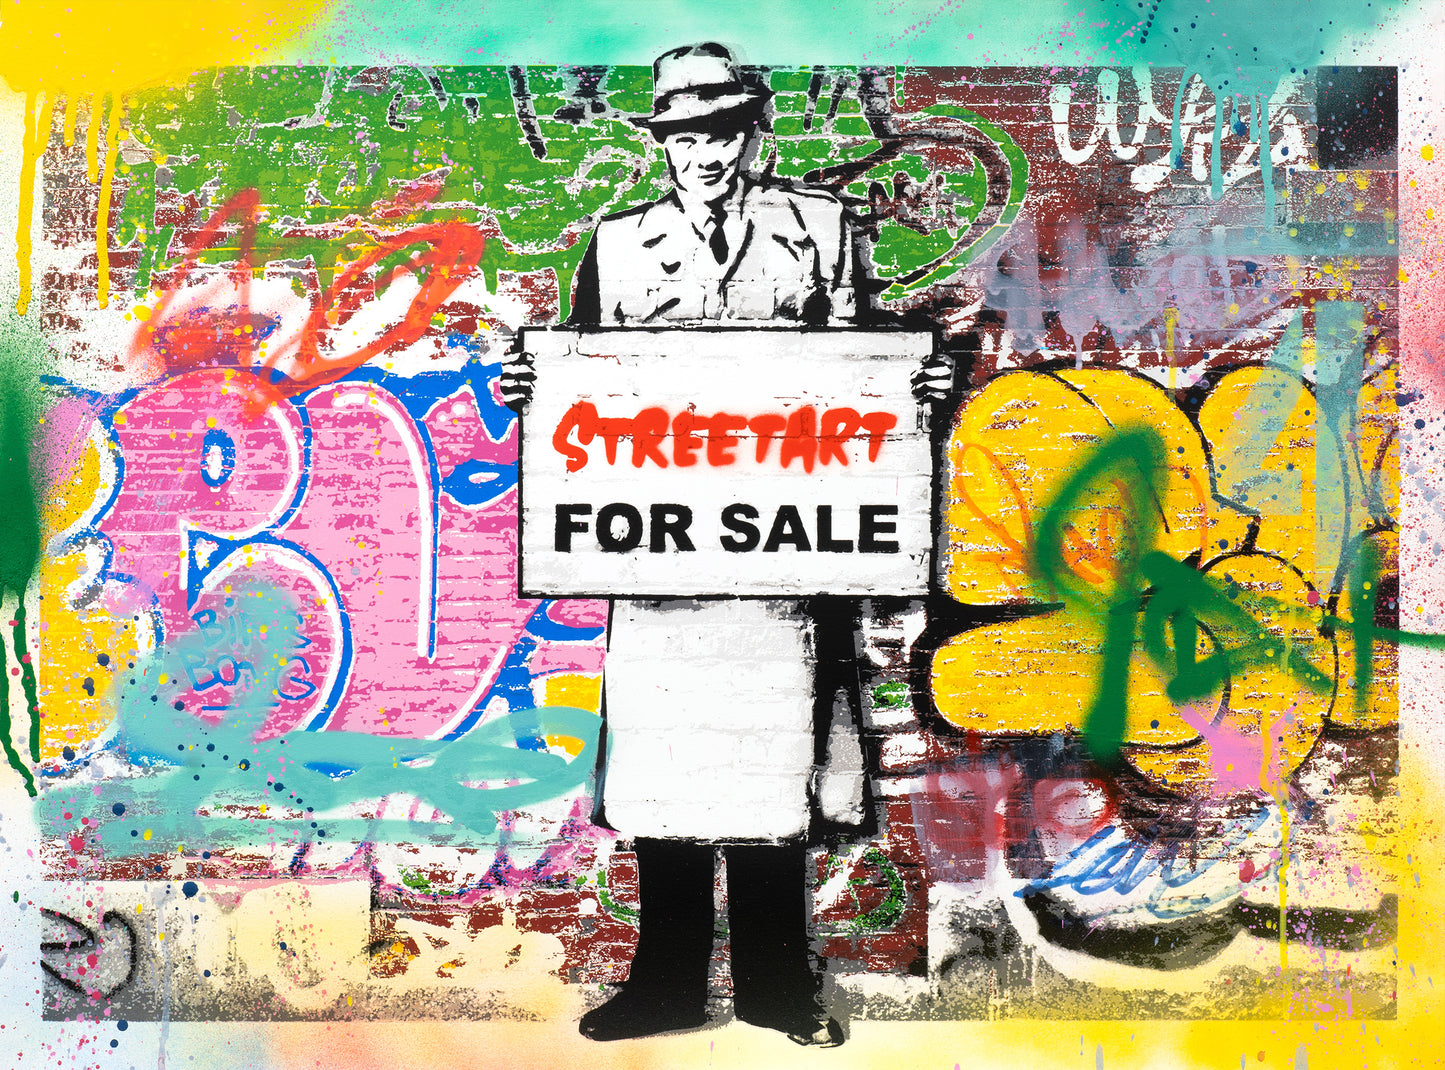 "Graffiti for Sale"